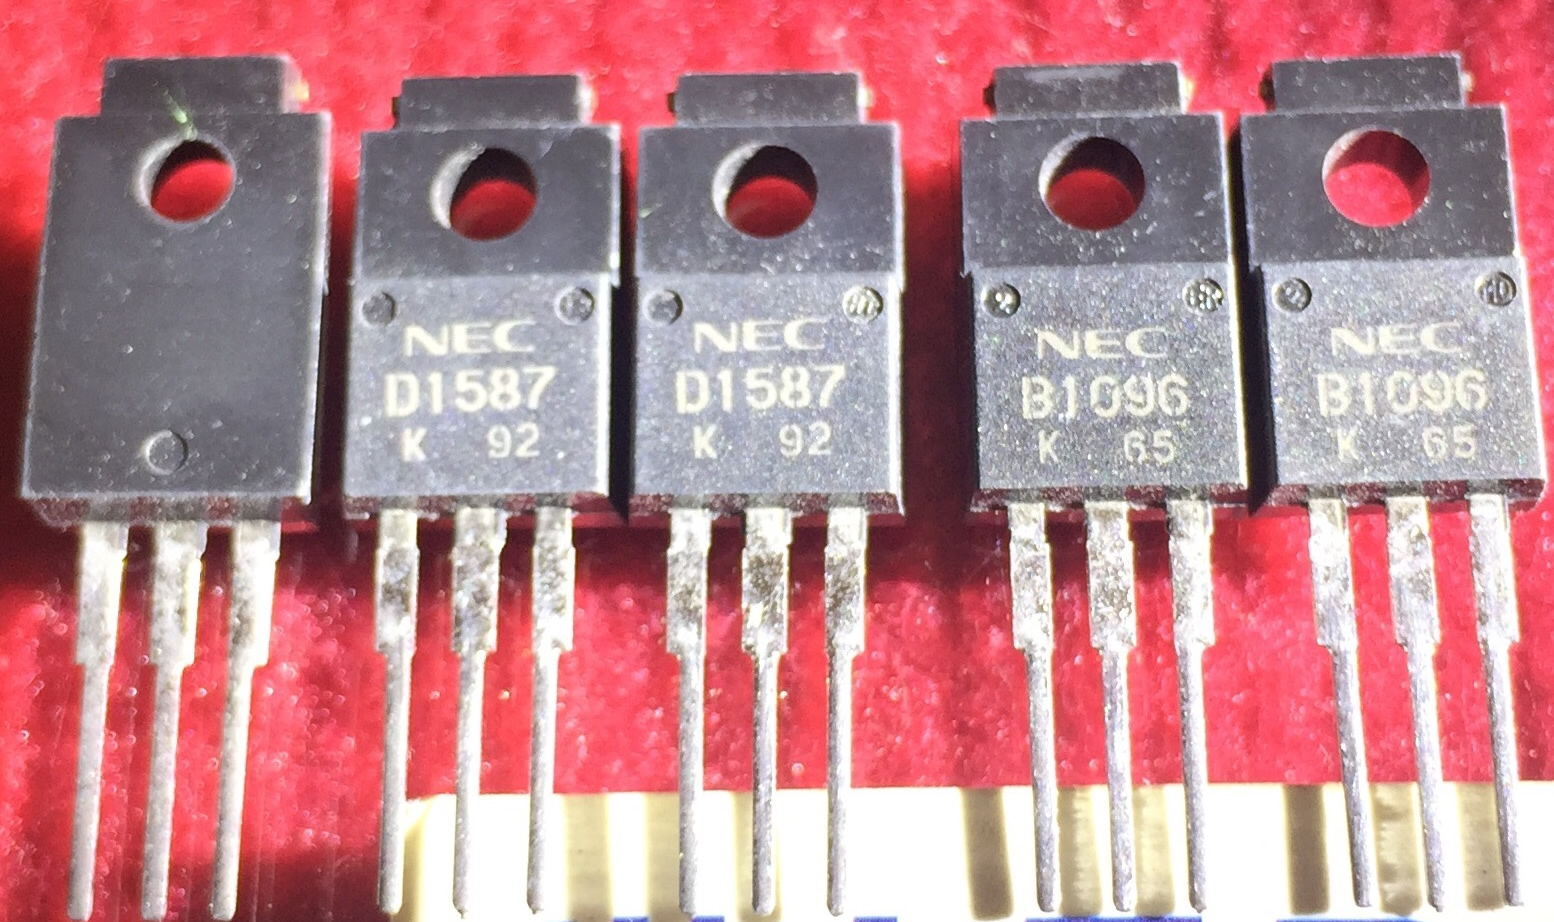 2SD1587  2SB1096  D1587 B1096  NEC  pair